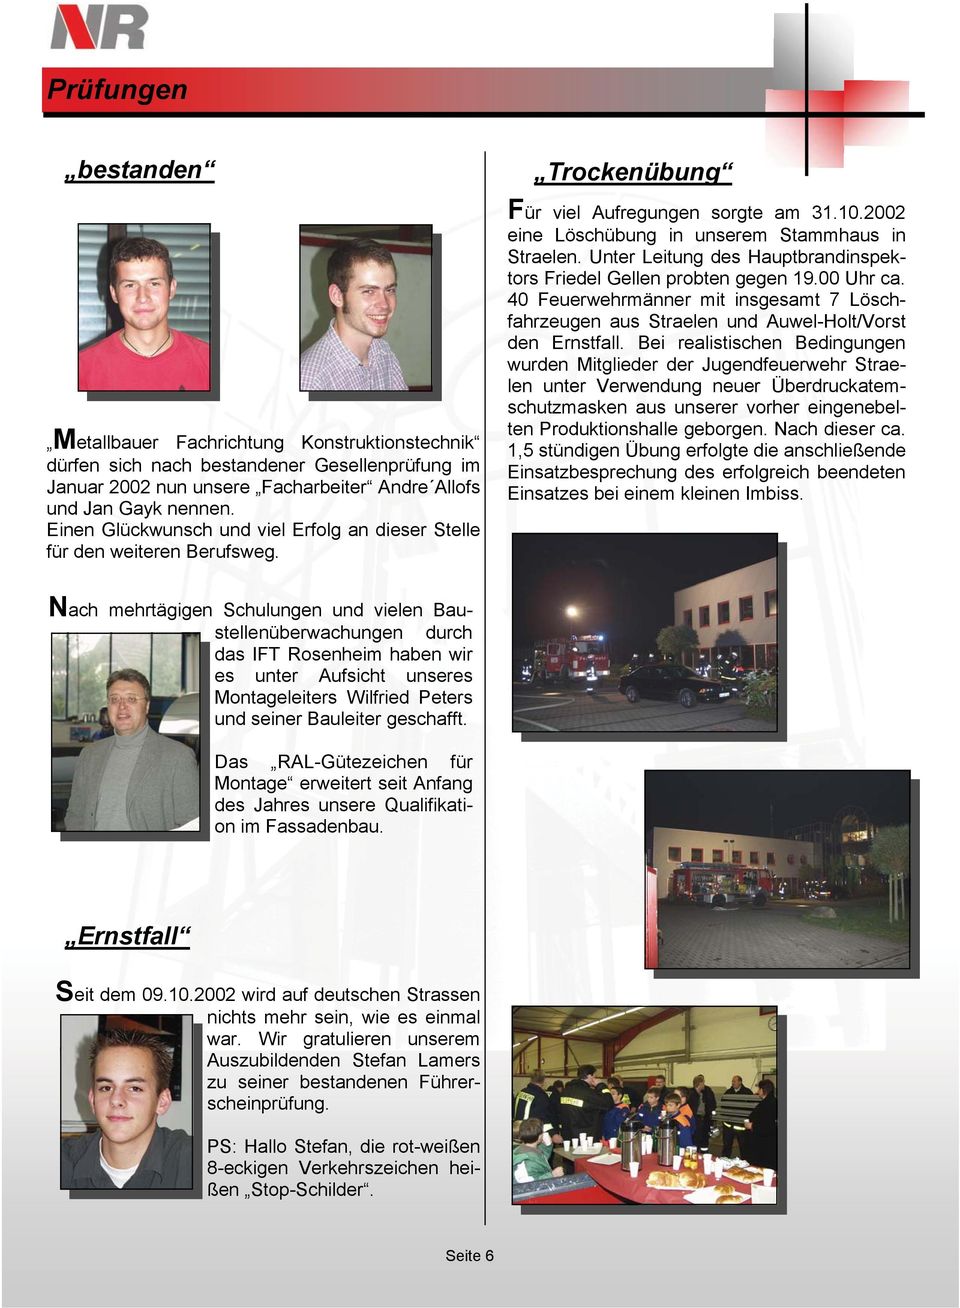 Unter Leitung des Hauptbrandinspektors Friedel Gellen probten gegen 19.00 Uhr ca. 40 Feuerwehrmänner mit insgesamt 7 Löschfahrzeugen aus Straelen und Auwel-Holt/Vorst den Ernstfall.